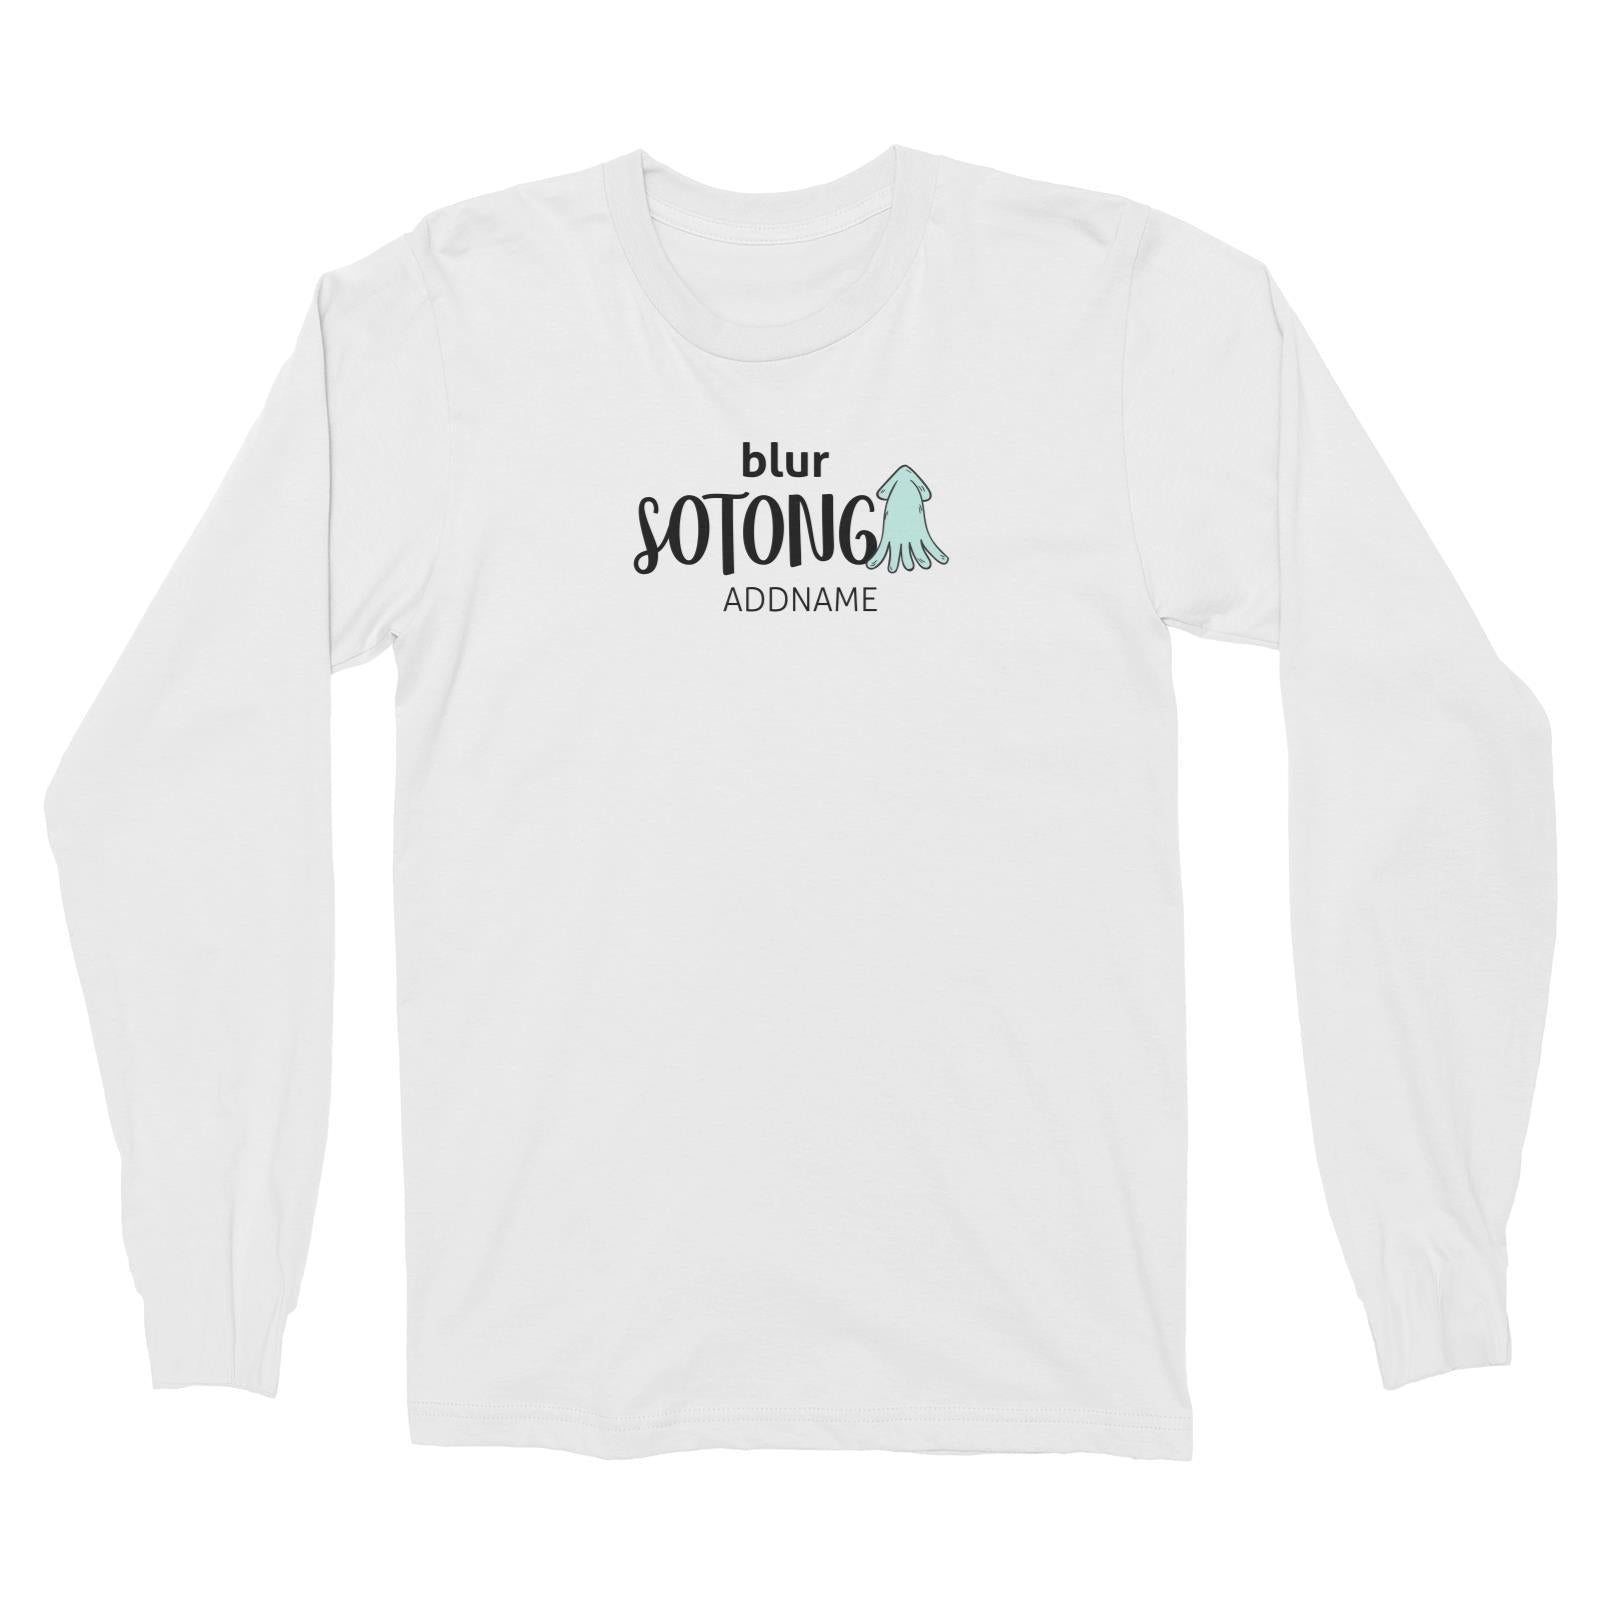 Blur Sotong Long Sleeve Unisex T-Shirt